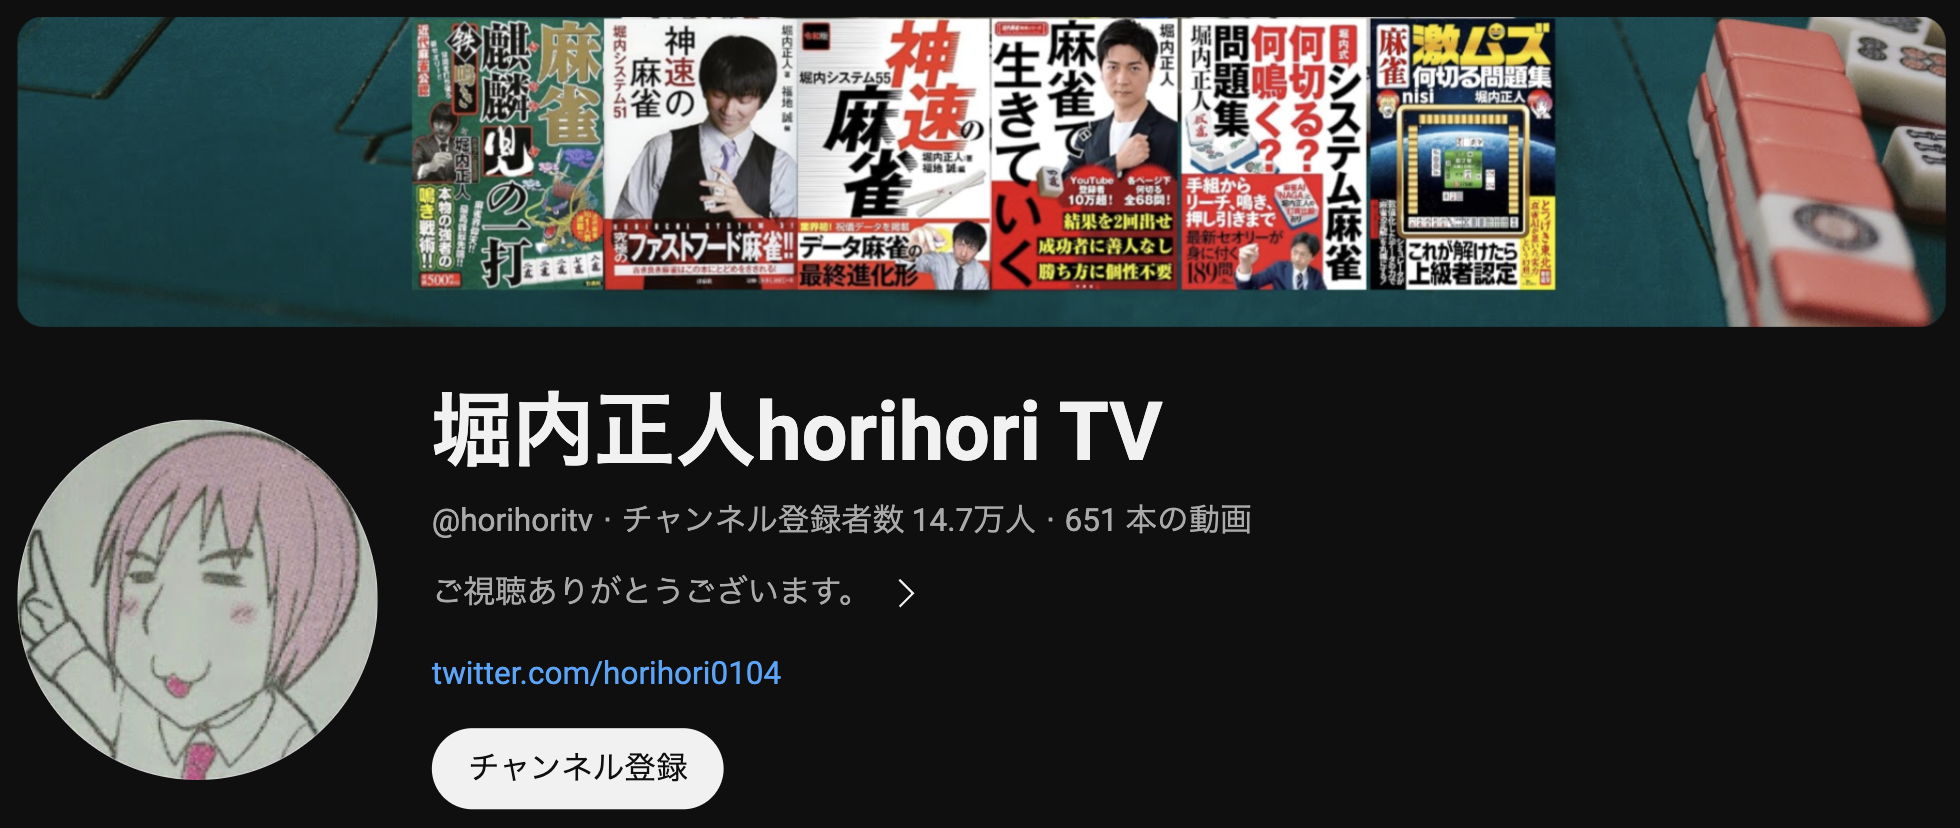 堀内正人horihori TV